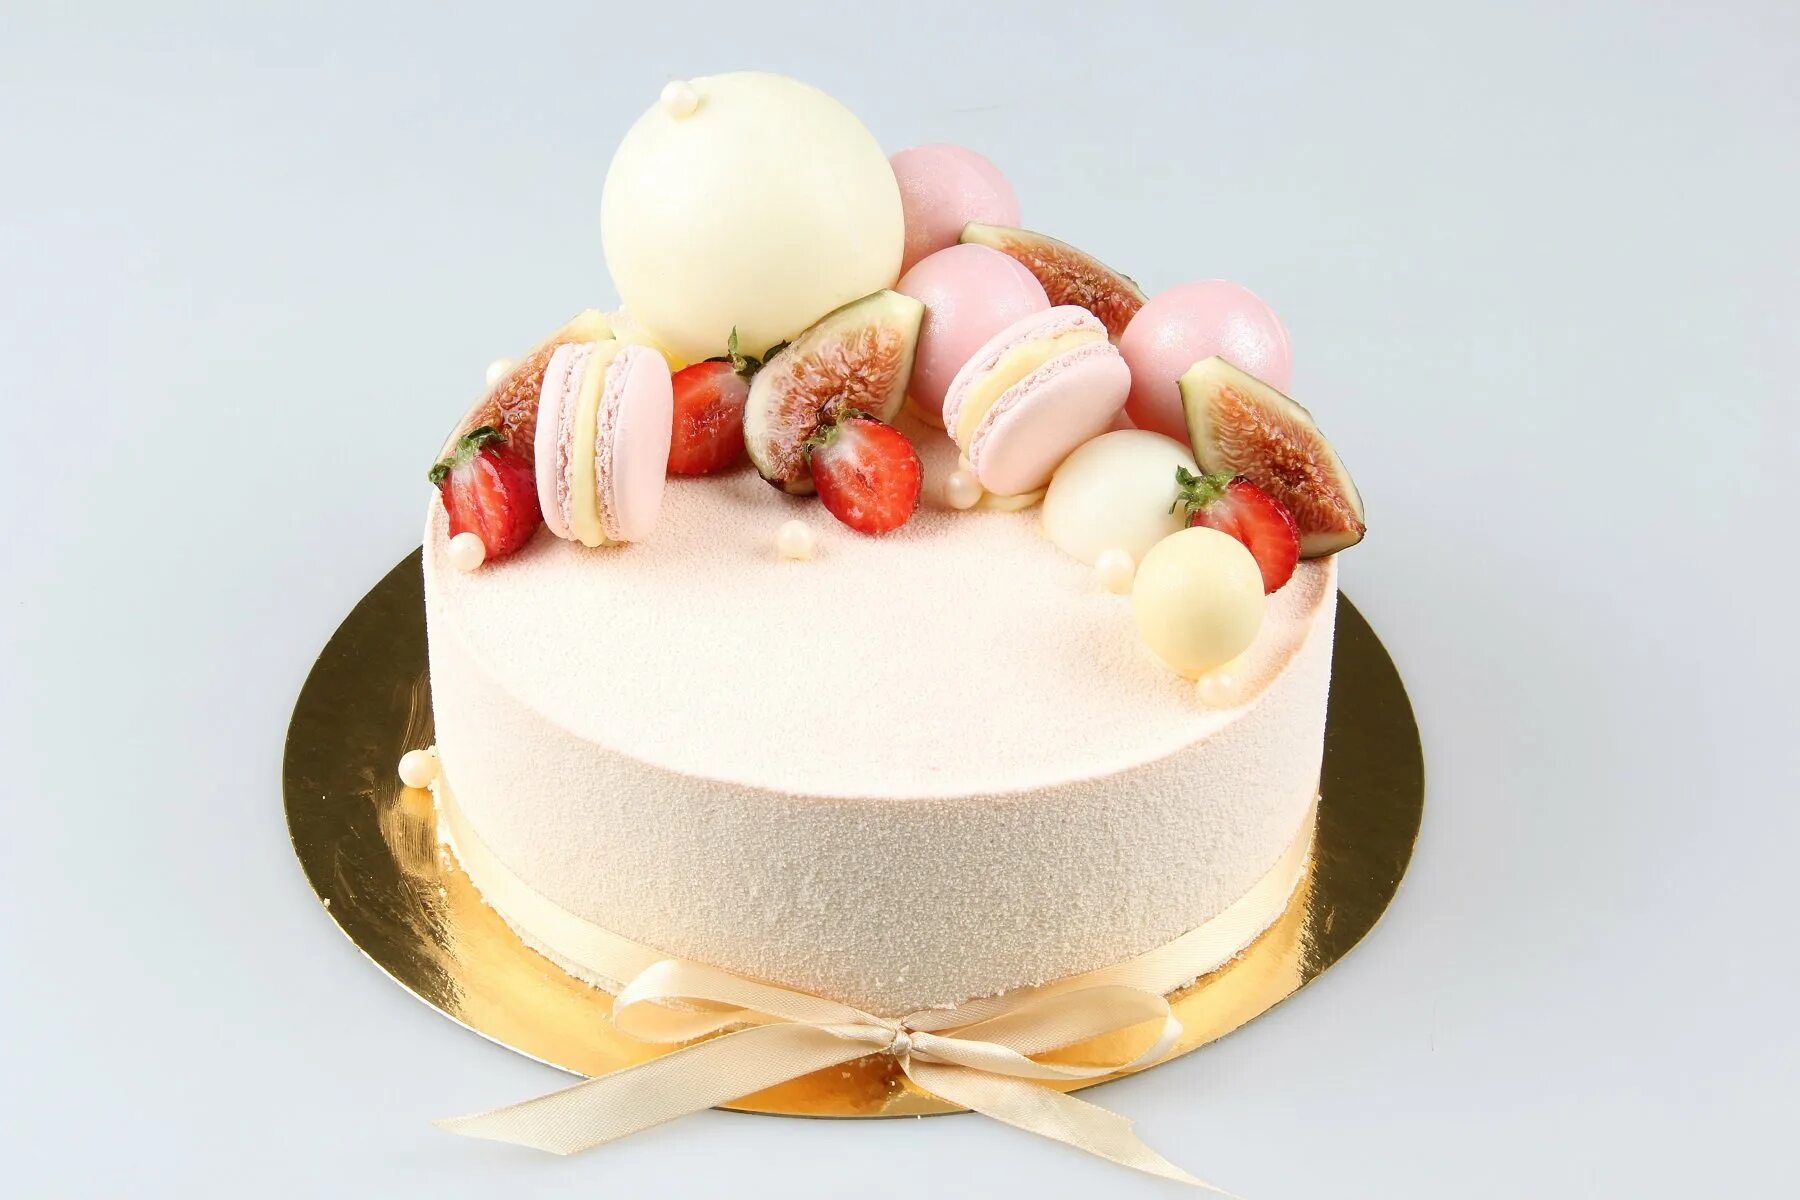 Сколько стоит муссовый торт 1 кг. Муссовый торт белый велюр. Муссовый торт пина Колада. Муссовый торт с макаронс. Муссовый торт декор ягодами.